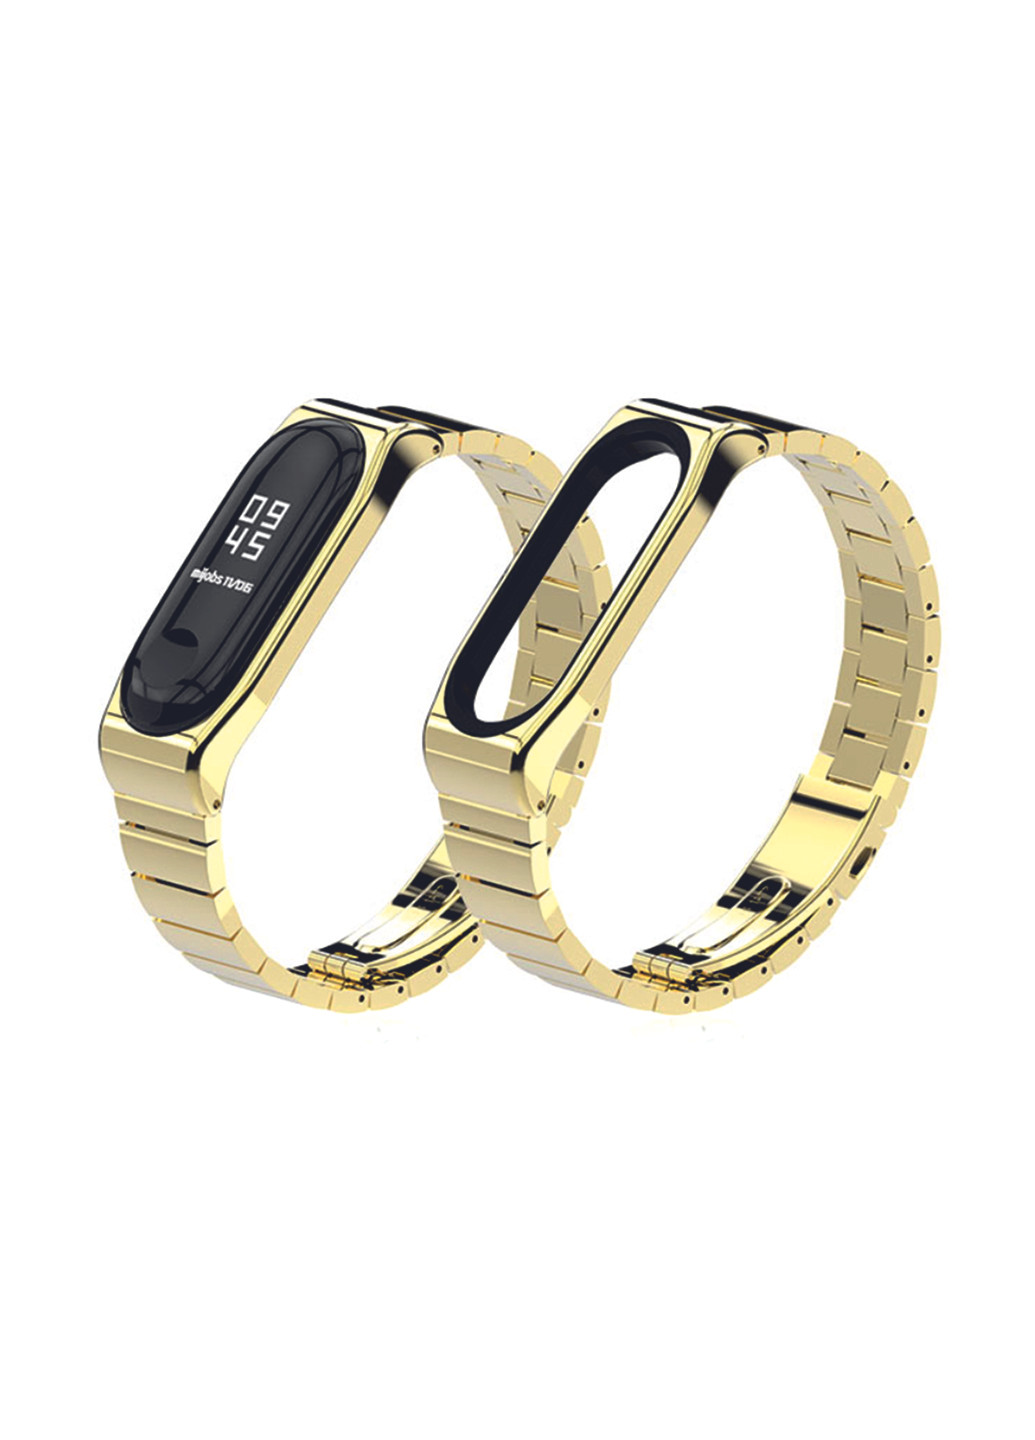 Ремінець для фітнес-браслета Premium для Mi Band 3/4 металевий Gold XoKo premium для mi band 3/4 металлический gold (156223603)